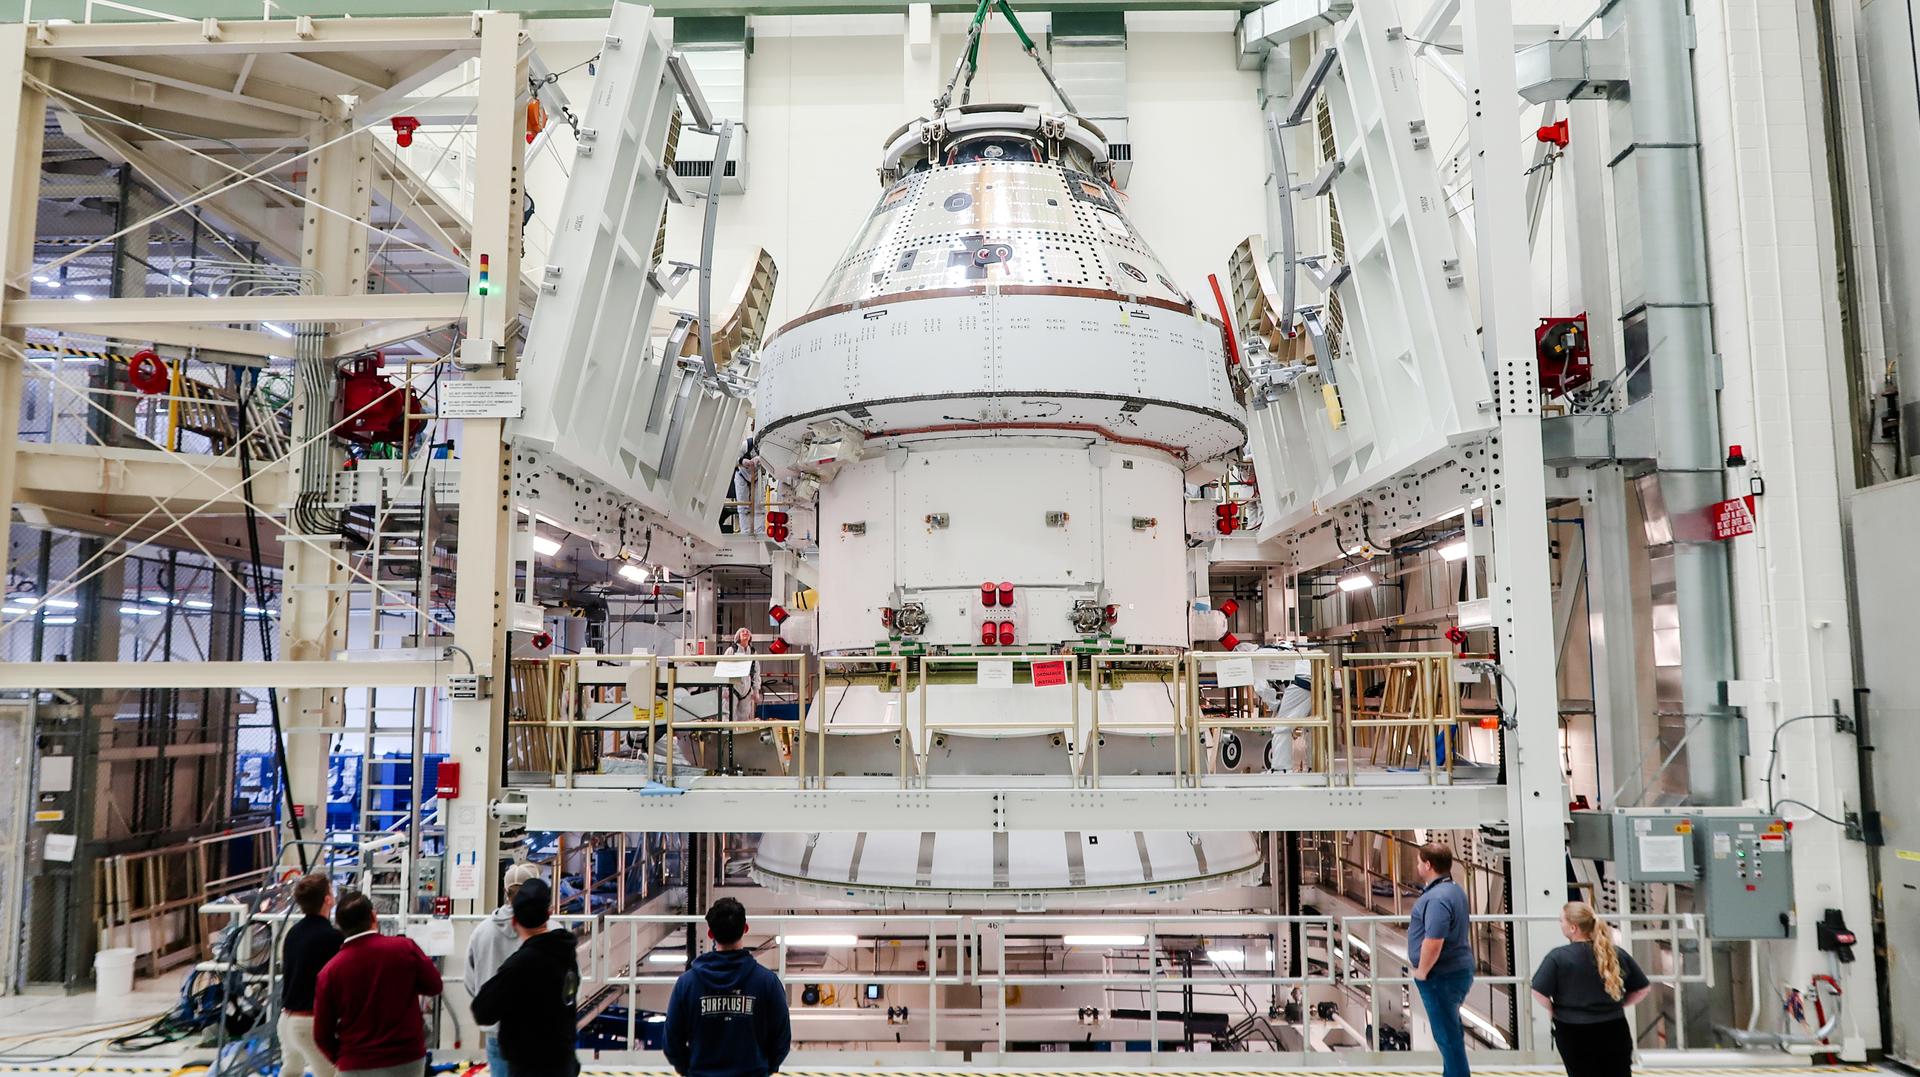 La nave espacial Artemis 2 Orion comienza a realizar pruebas antes de la misión lunar con astronautas en 2025 (video)